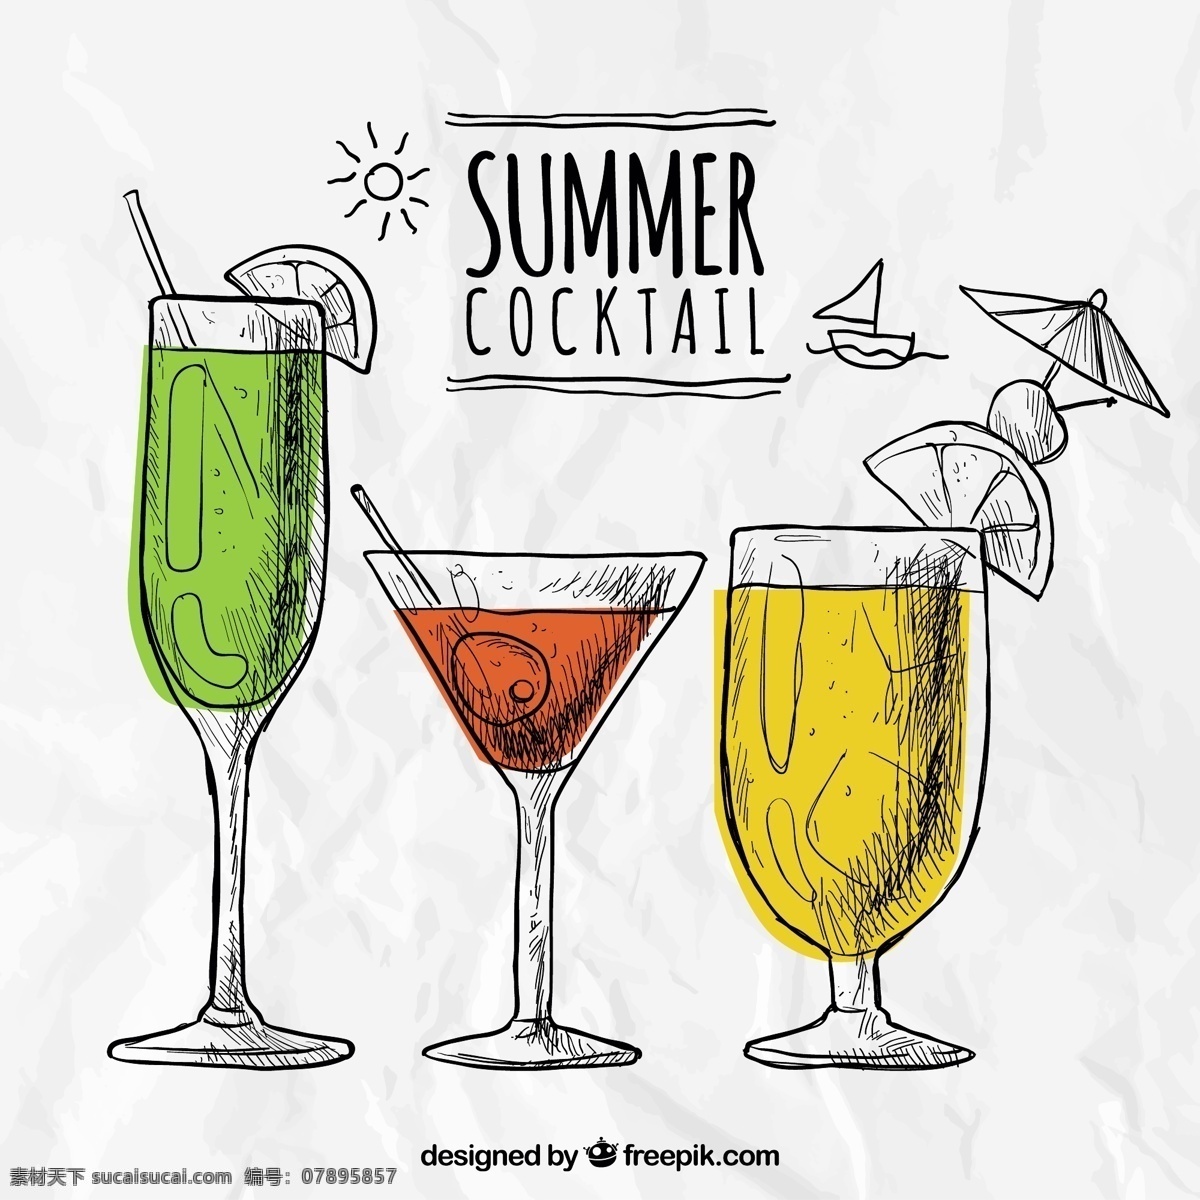 粗略 夏季 鸡尾酒 夏天 一方面 手绘 饮料 绘图 酒精 绘制 粗略的 酒精饮料 白色